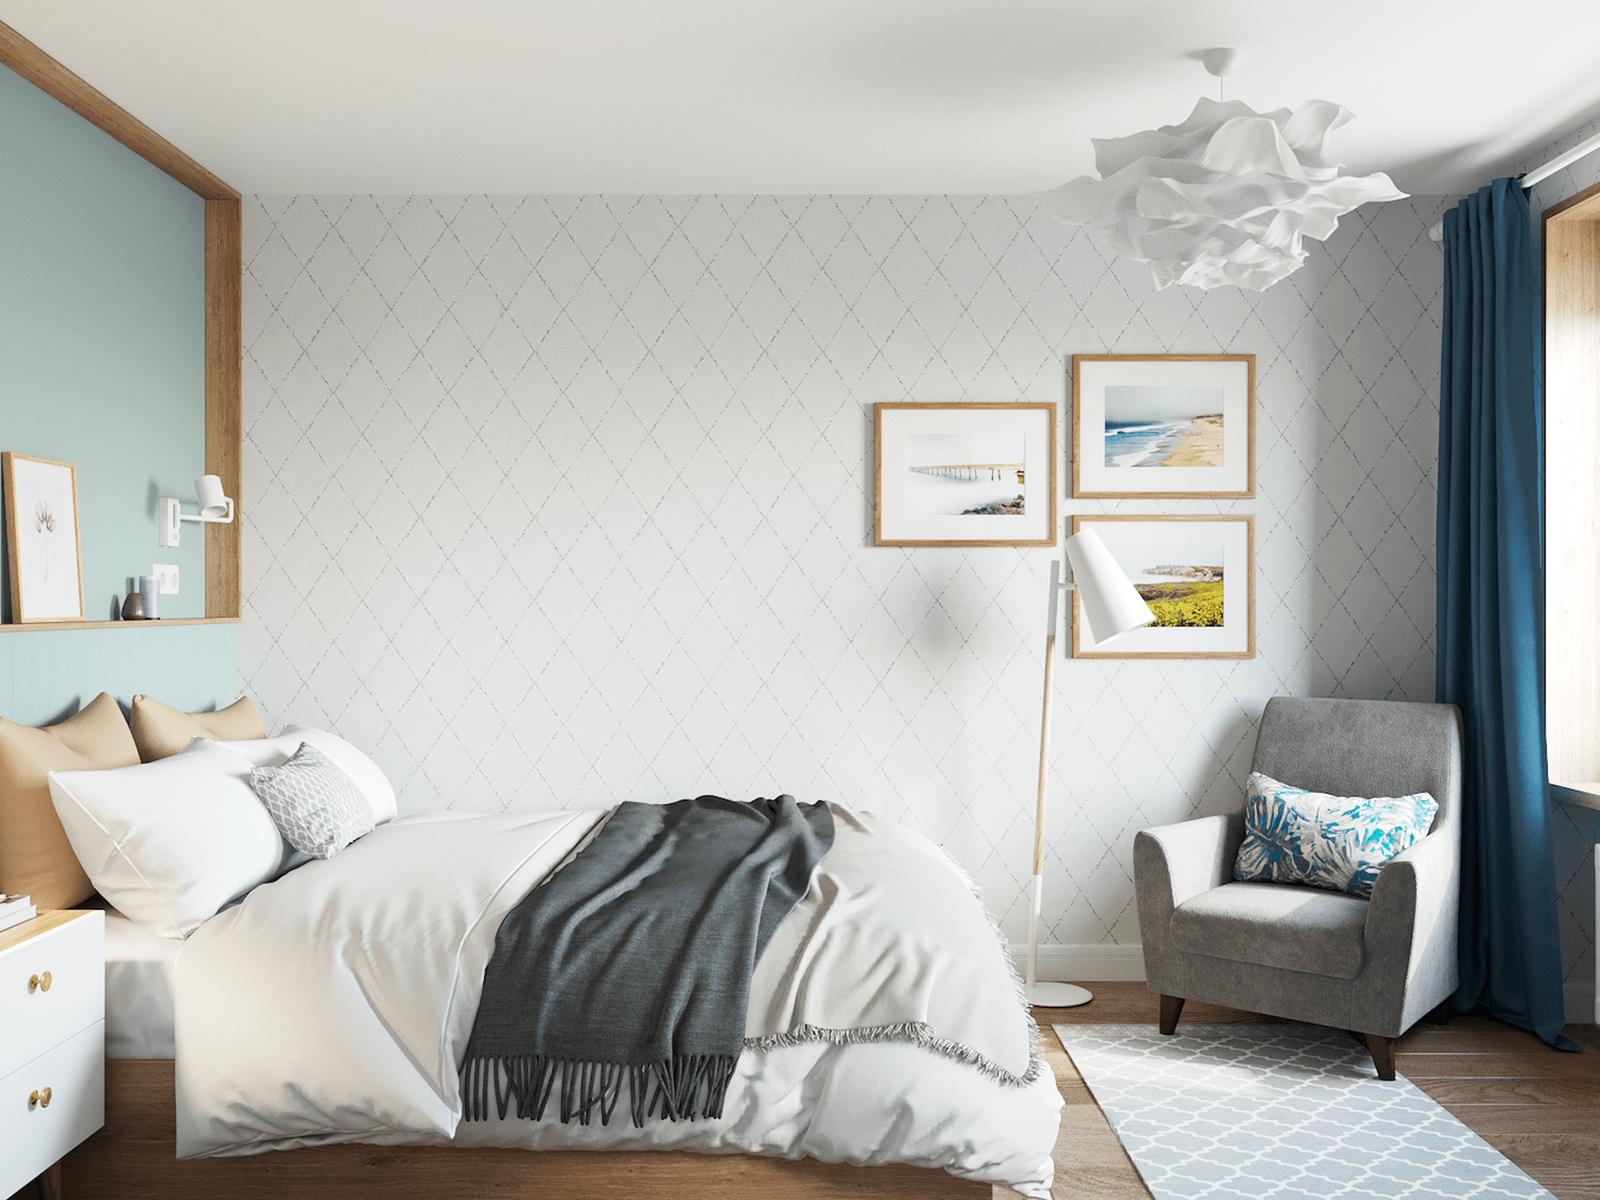 Phòng ngủ kết hợp gam màu xanh ngọc lam và màu trắng, những đường kẻ họa tiết hình thoi trên tường và thảm trải sàn cũng trở thành điểm nhấn nhẹ nhàng.